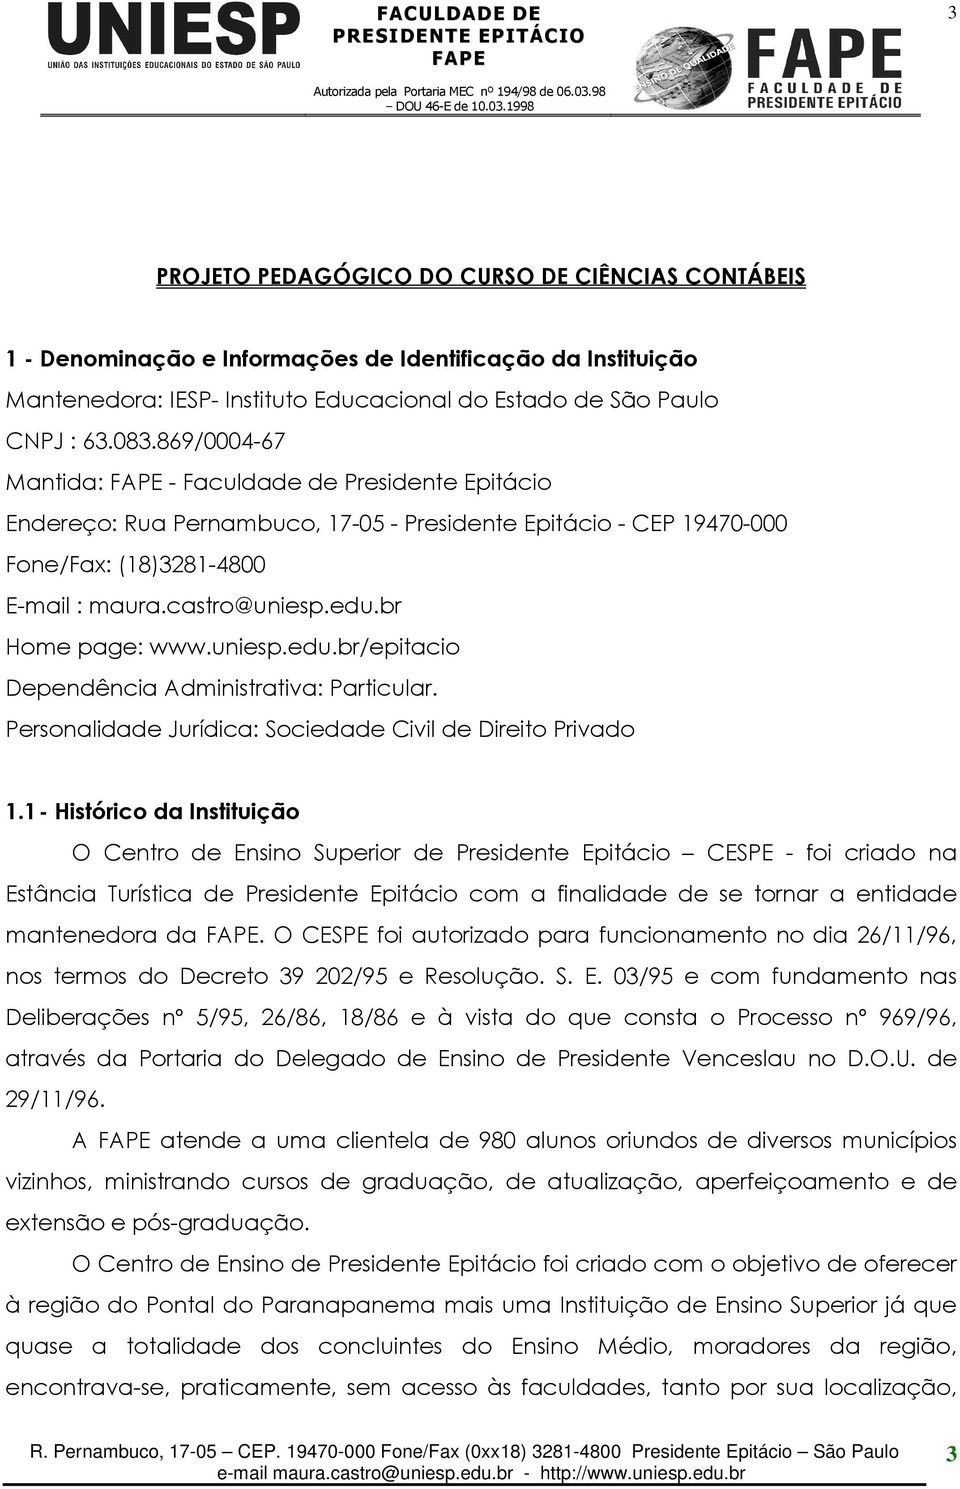 br Home page: www.uniesp.edu.br/epitacio Dependência Administrativa: Particular. Personalidade Jurídica: Sociedade Civil de Direito Privado 1.